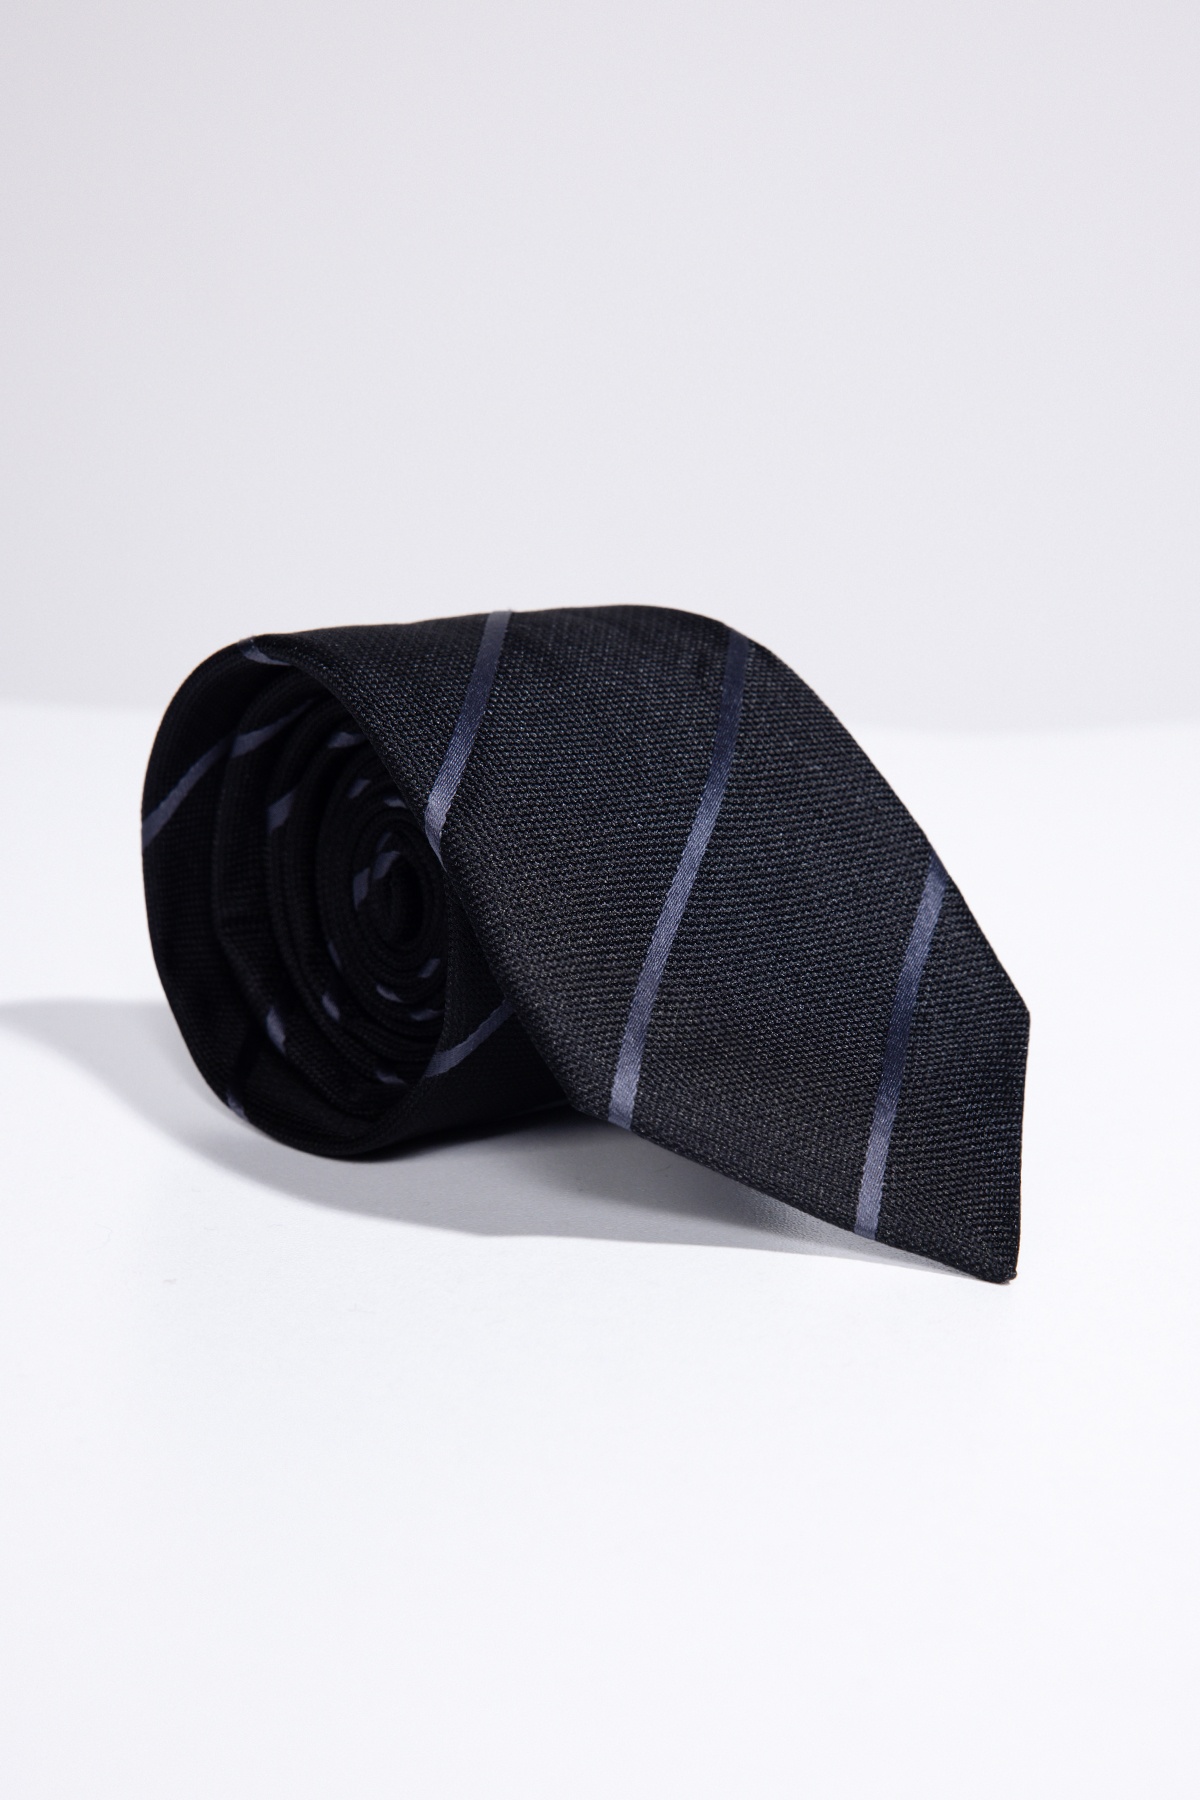  черный галстук